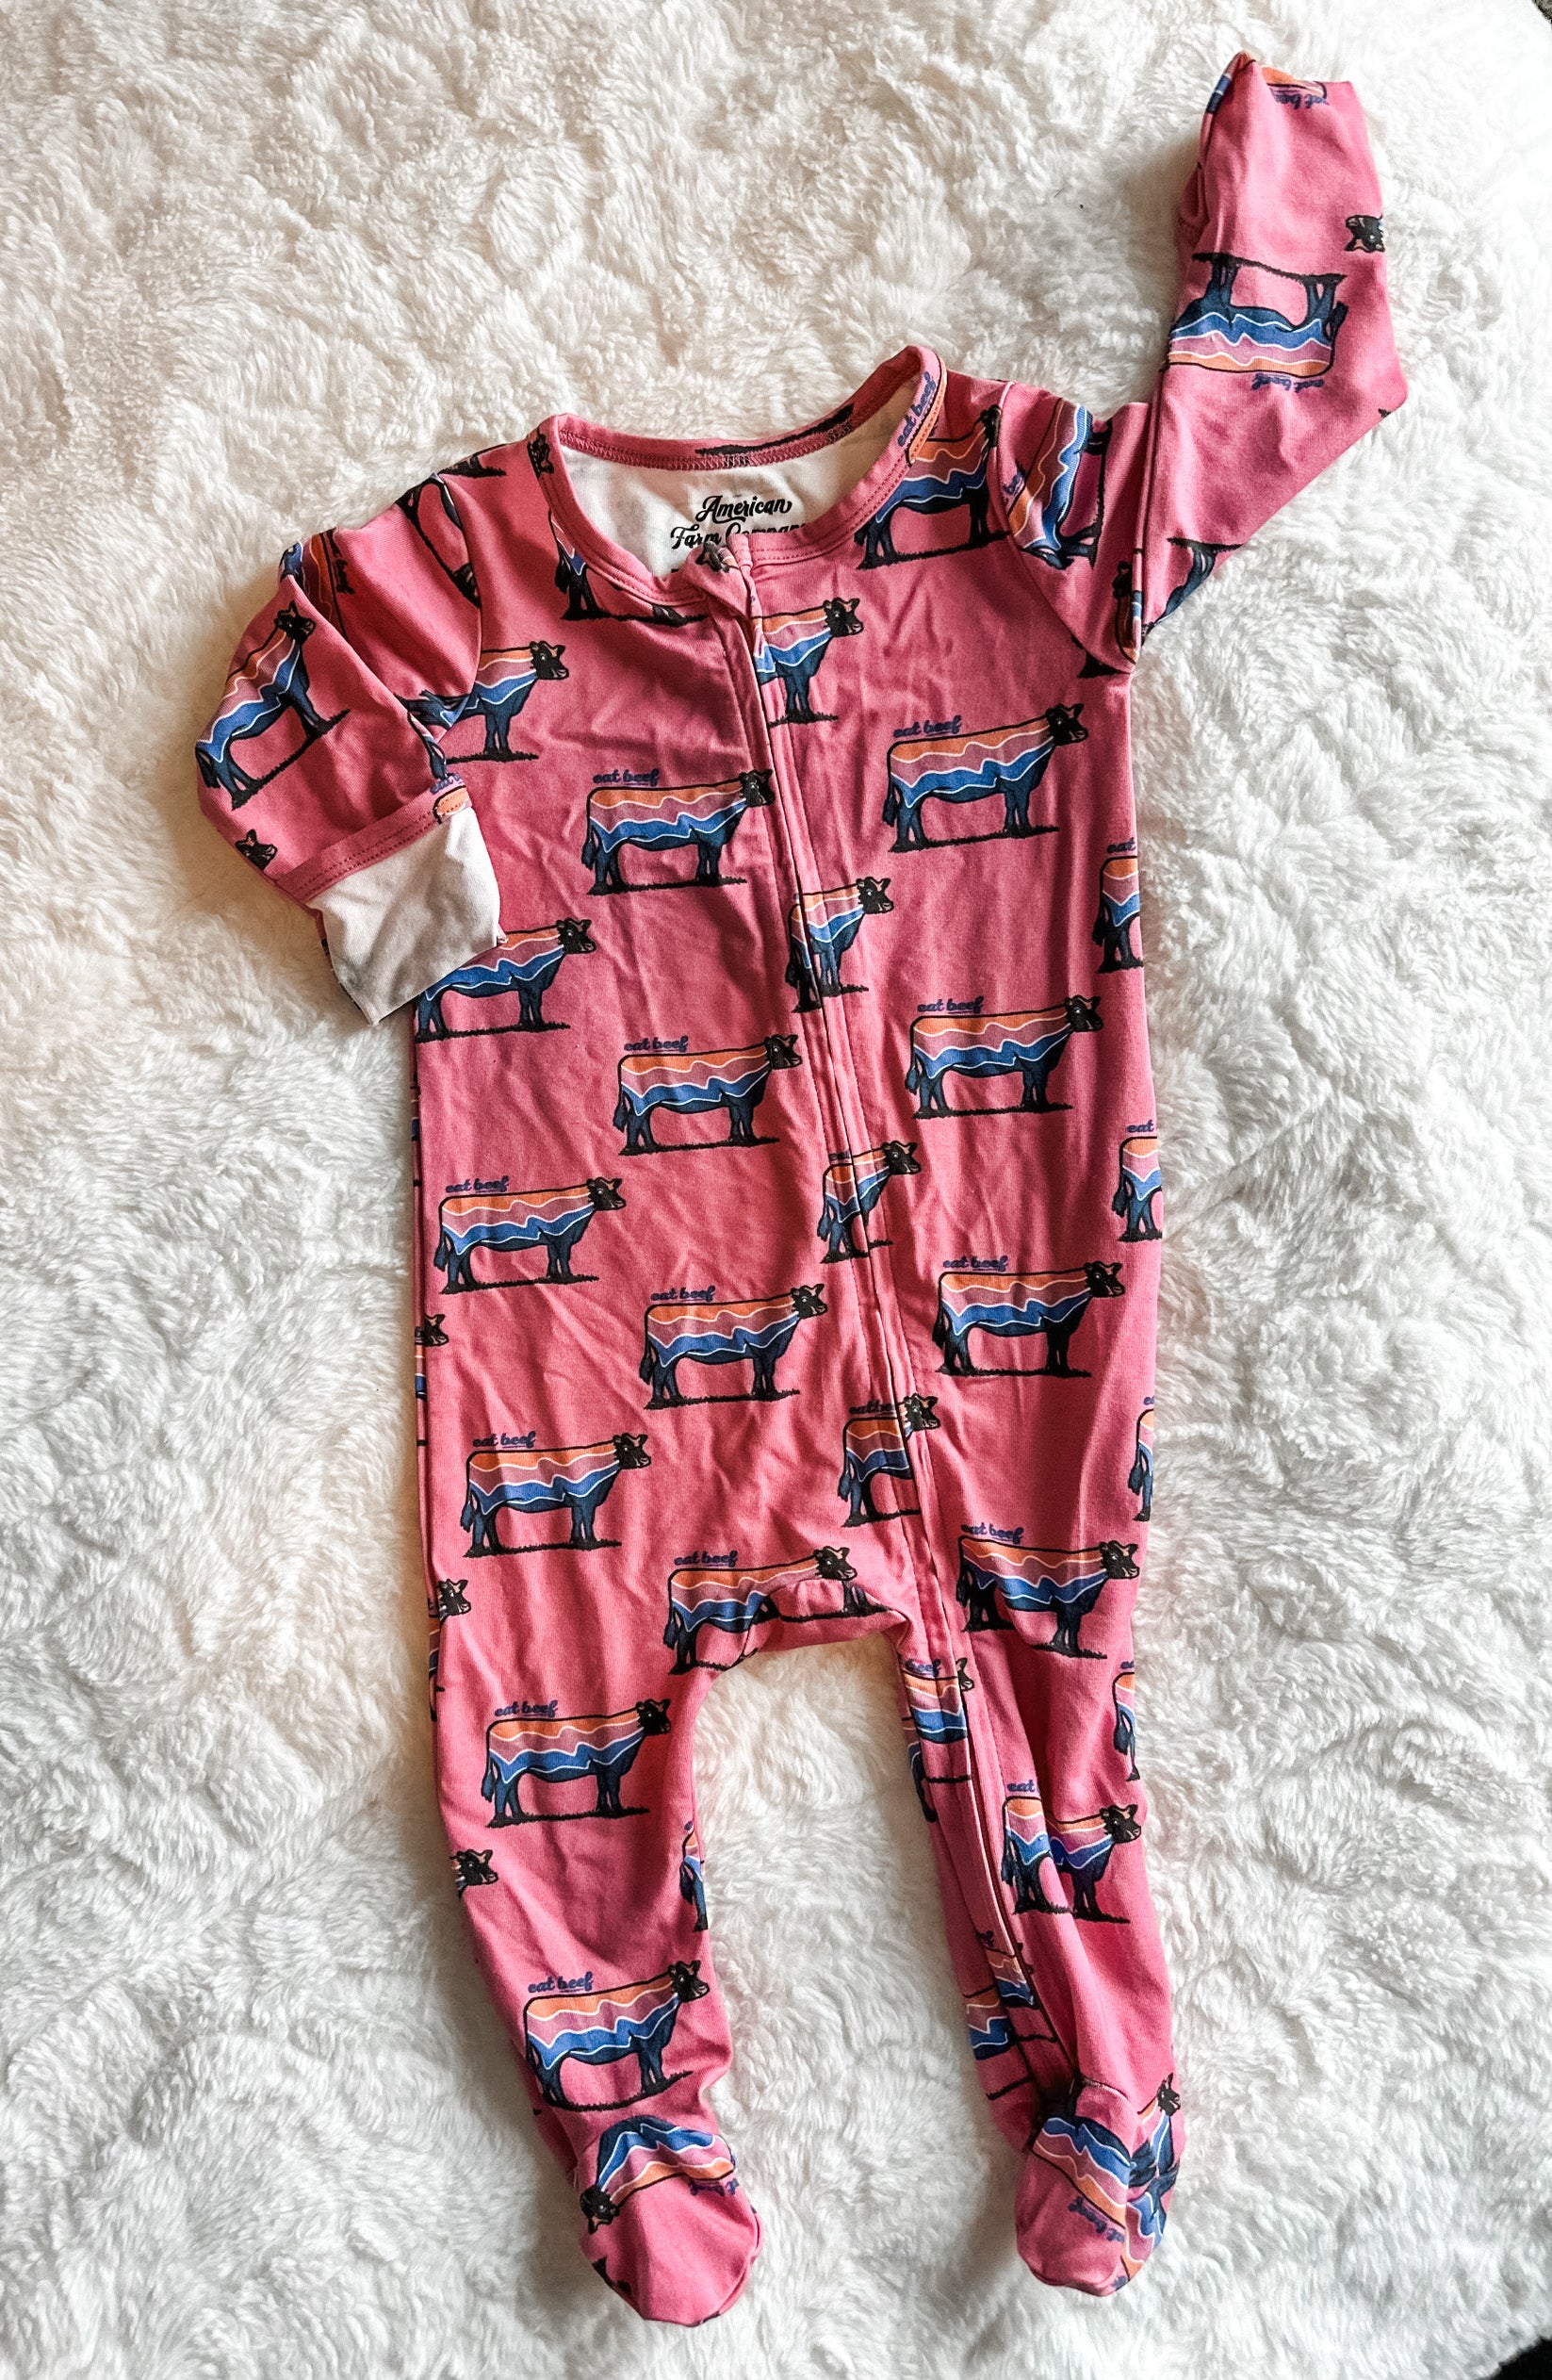 Retro Cow Baby Pajamas